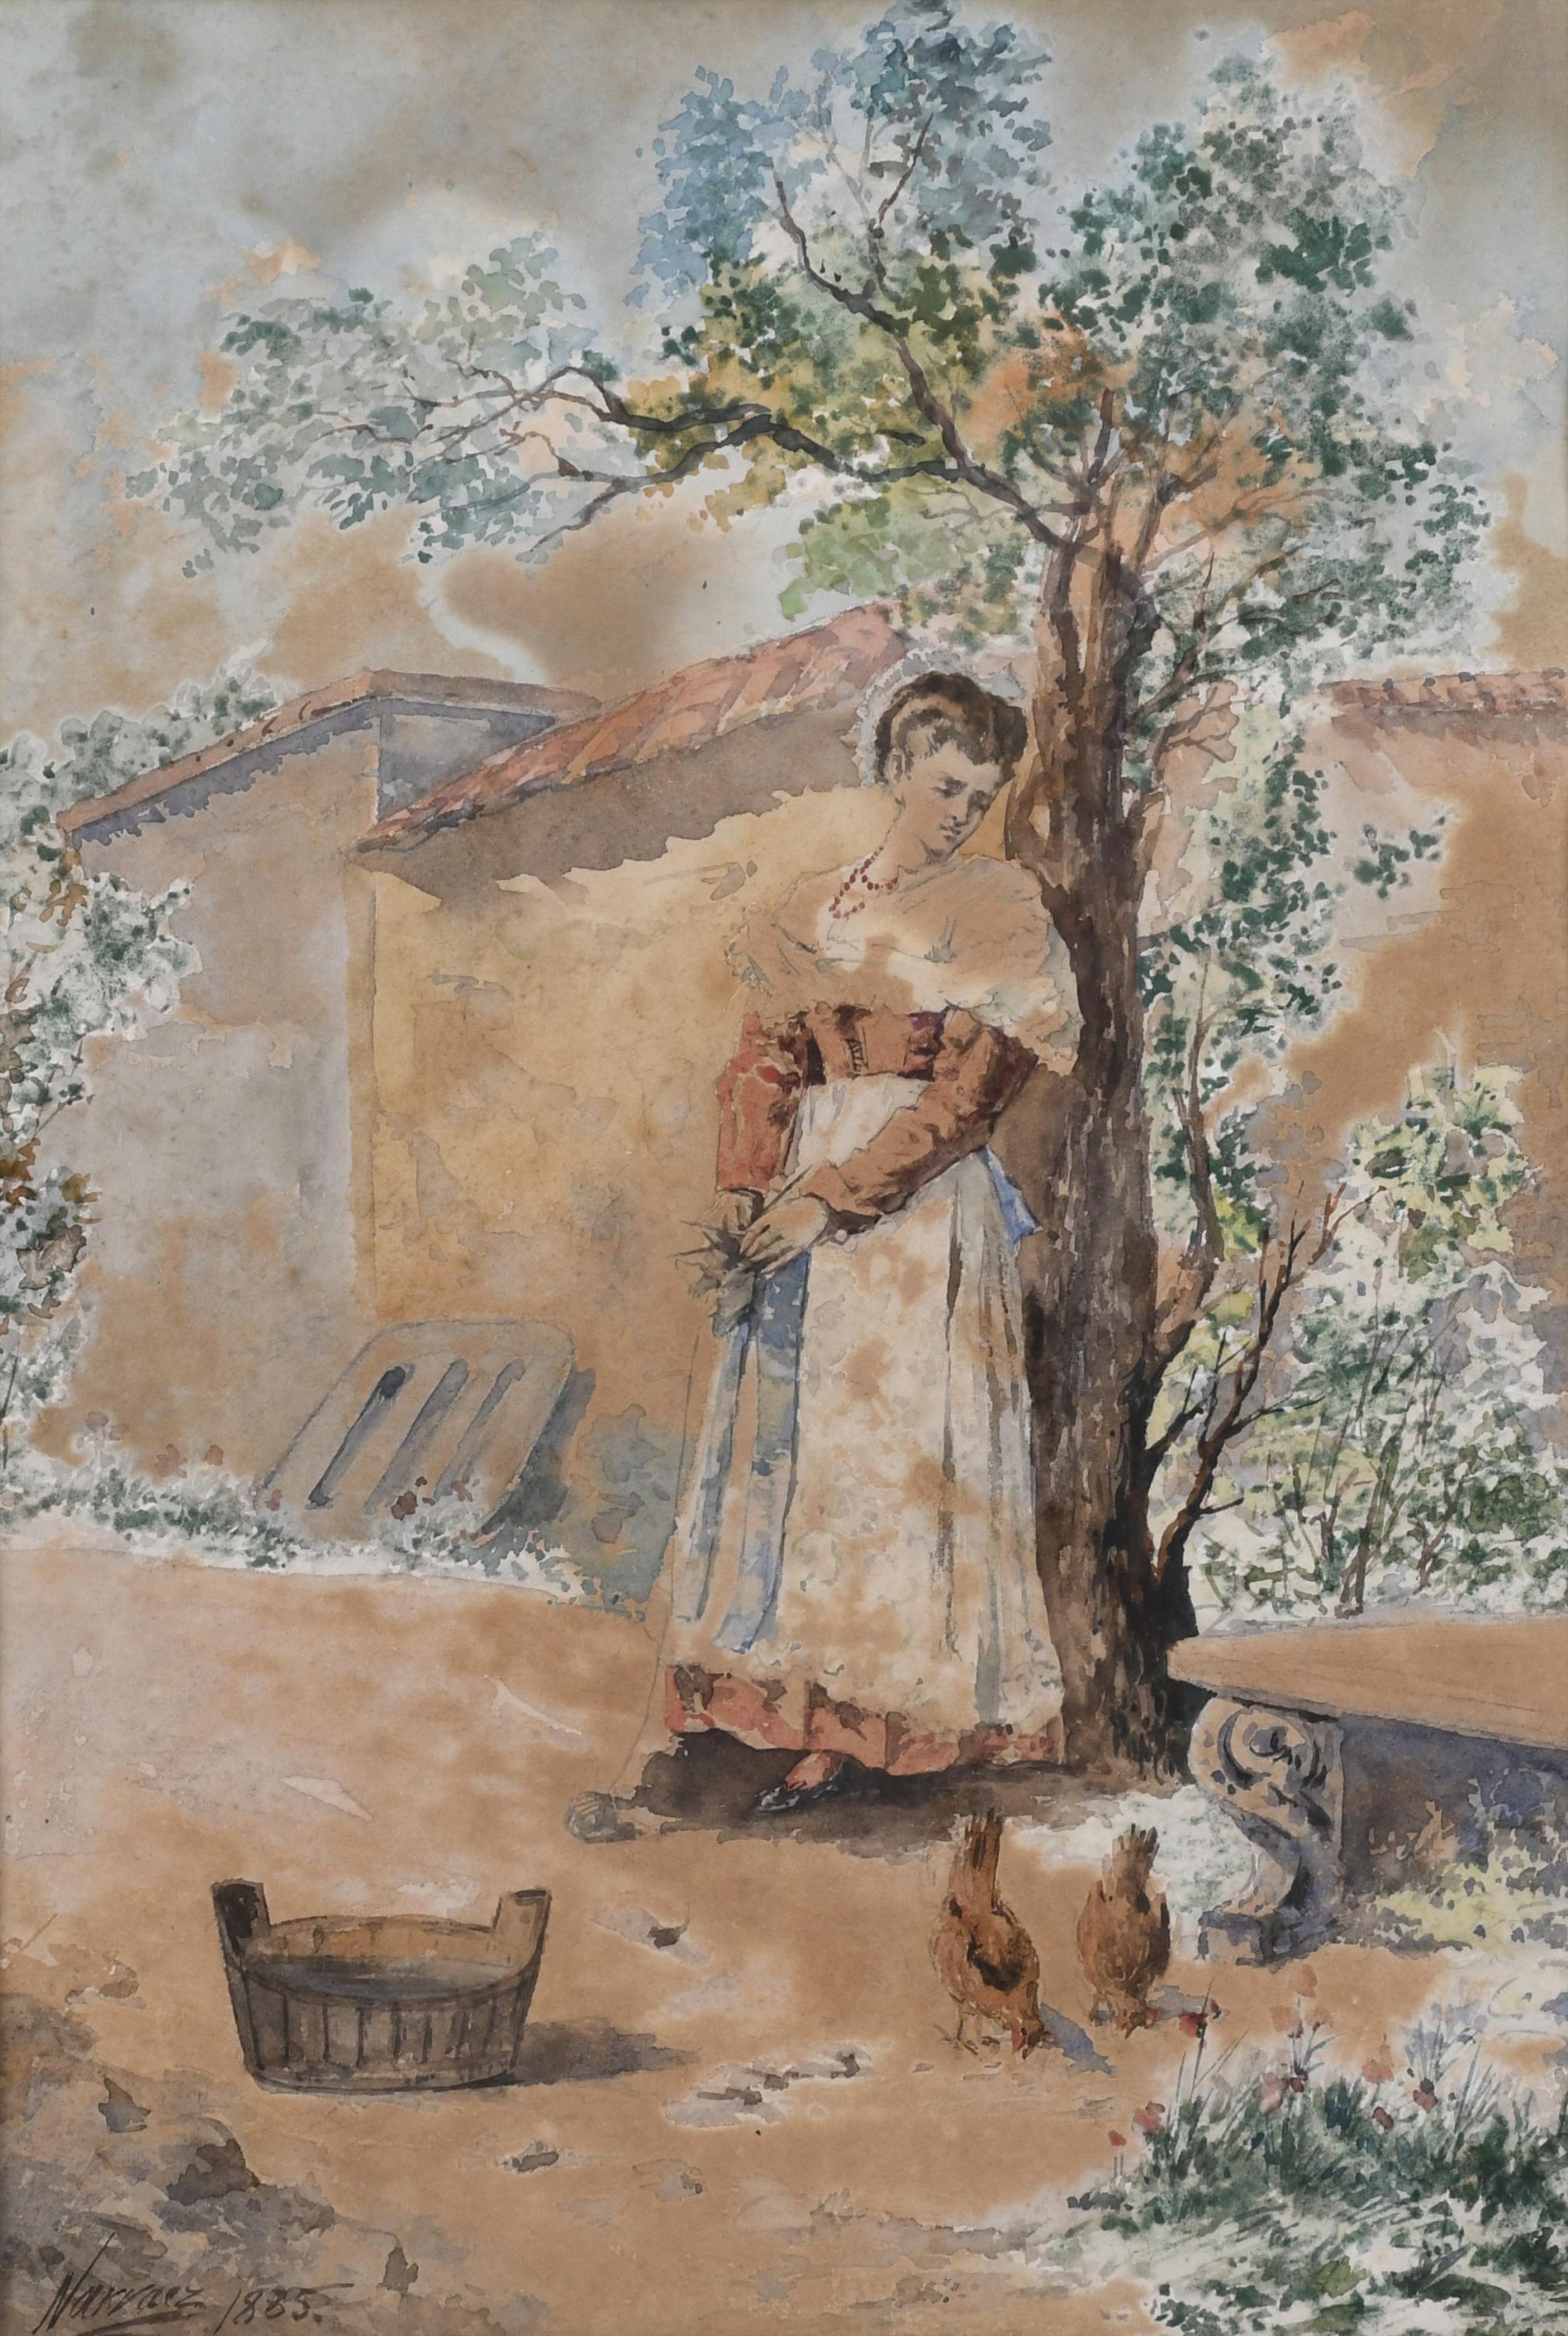 ESCUELA ESPAÑOLA, SIGLO XIX. "JOVEN Y GALLINAS", 1885.